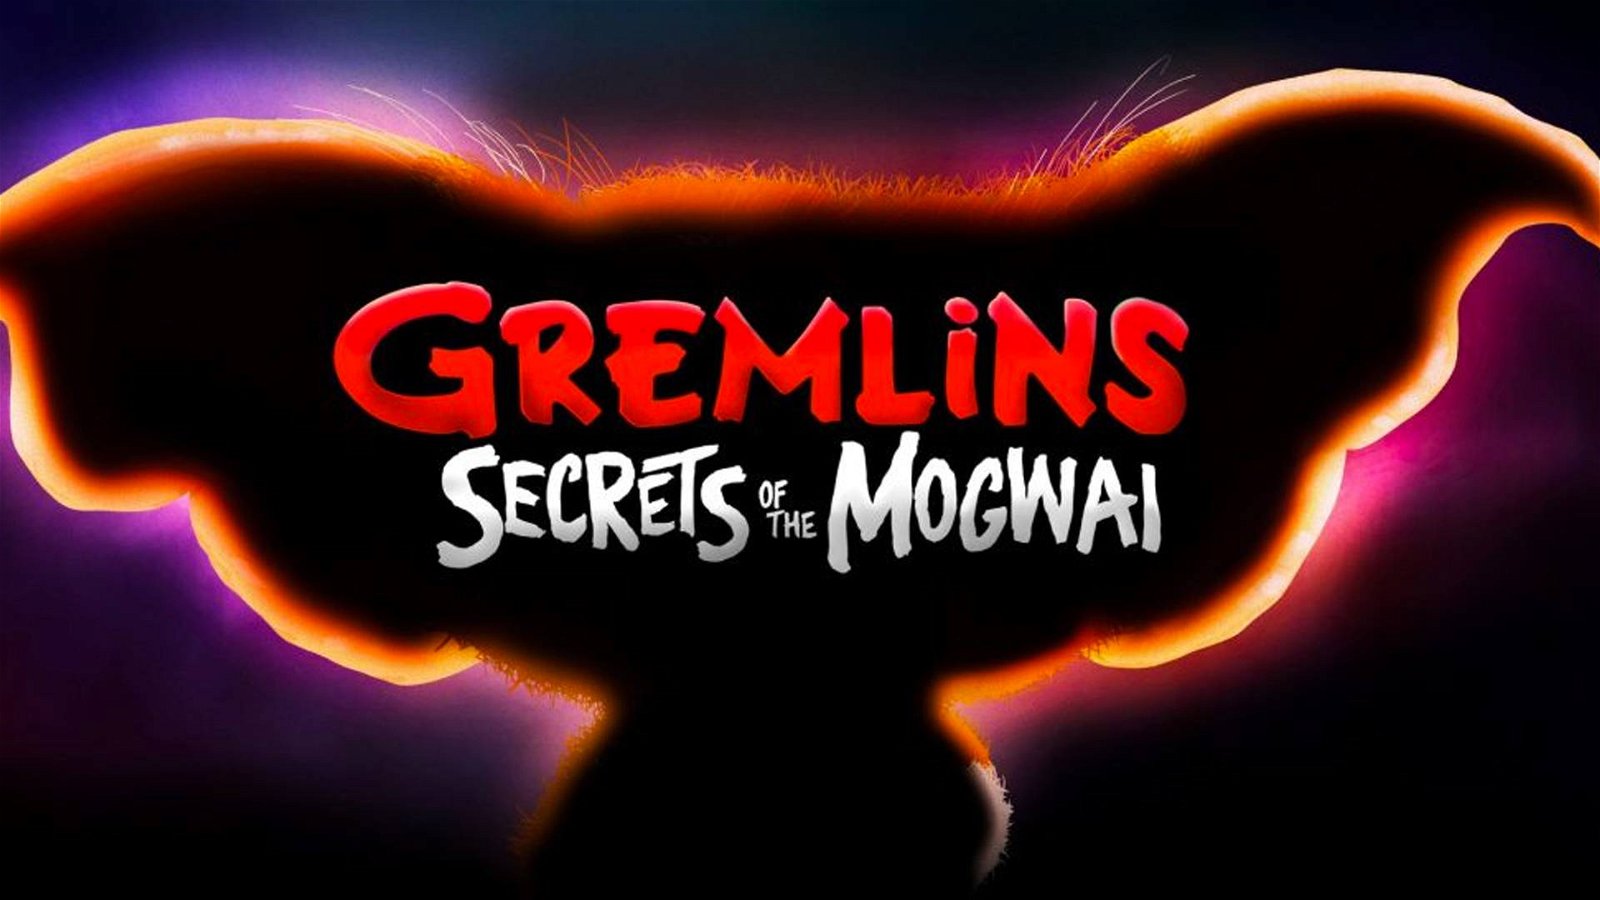 Immagine di Gremlins: Secrets of the Mogwai annunciata la data di esordio della serie animata dei Gremlins